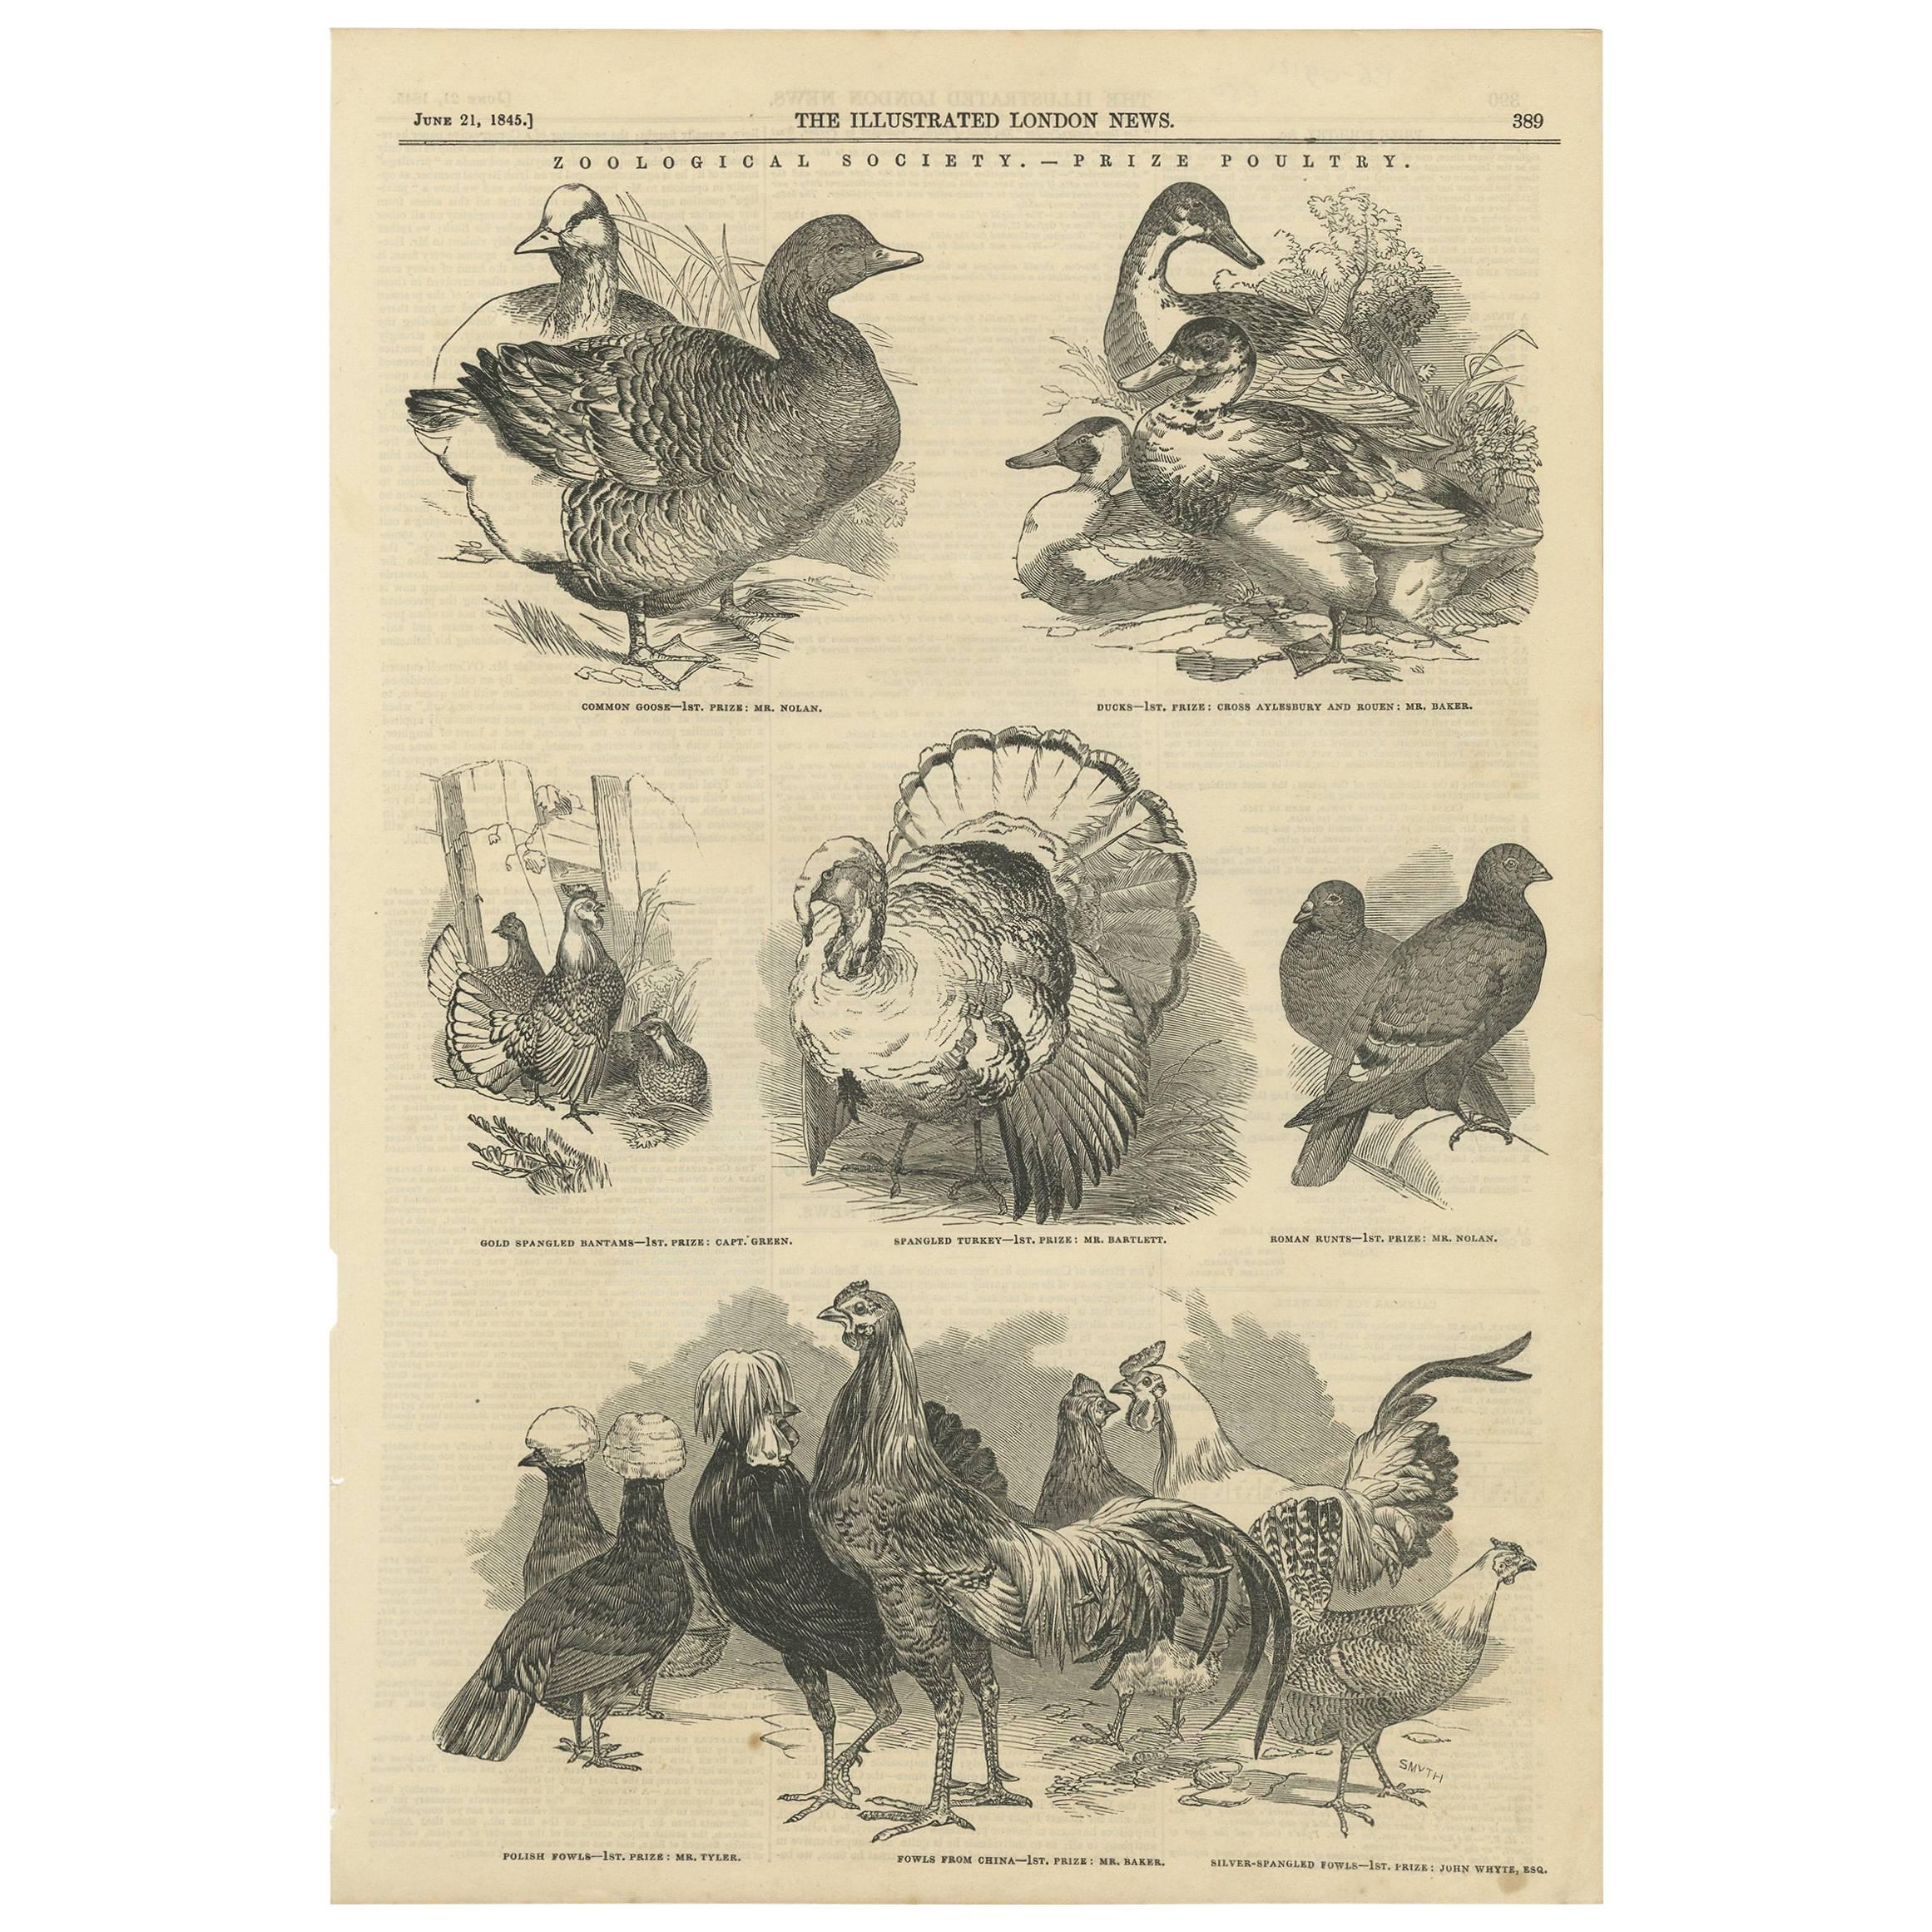 Antiker antiker Druck von Preispoultry der Zoological Society, 1845